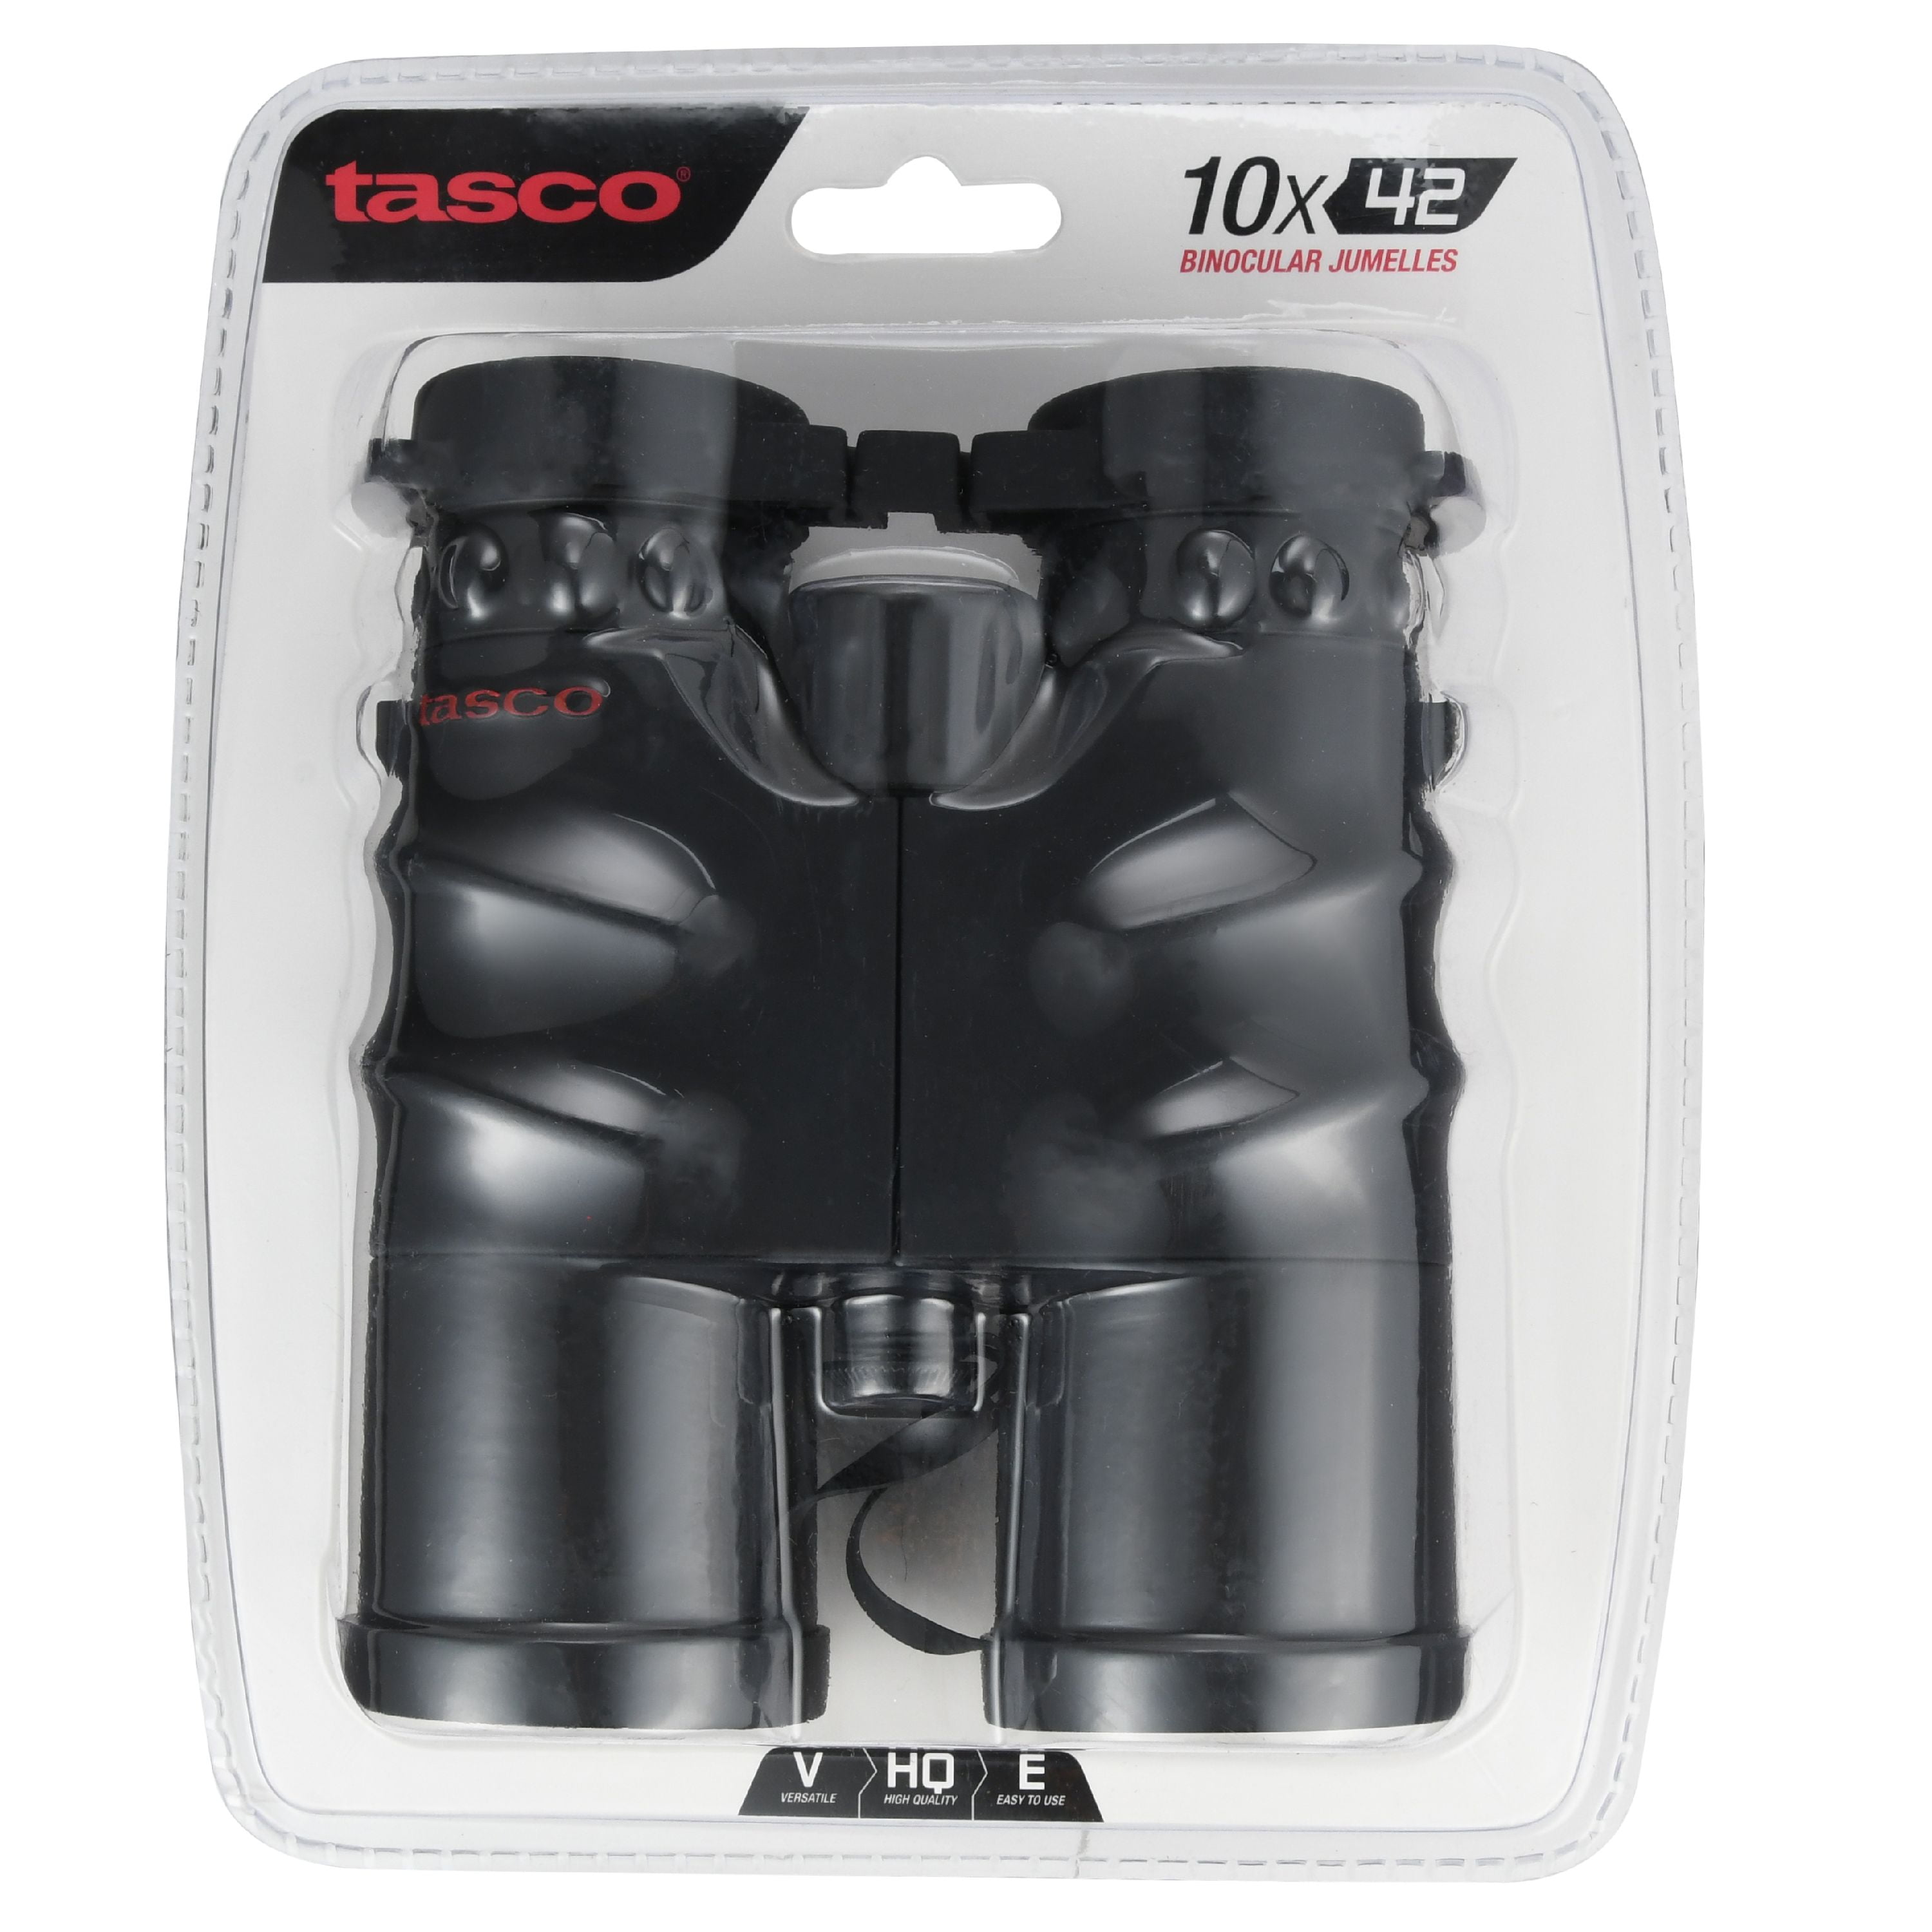 tasco 10x42 binoculars